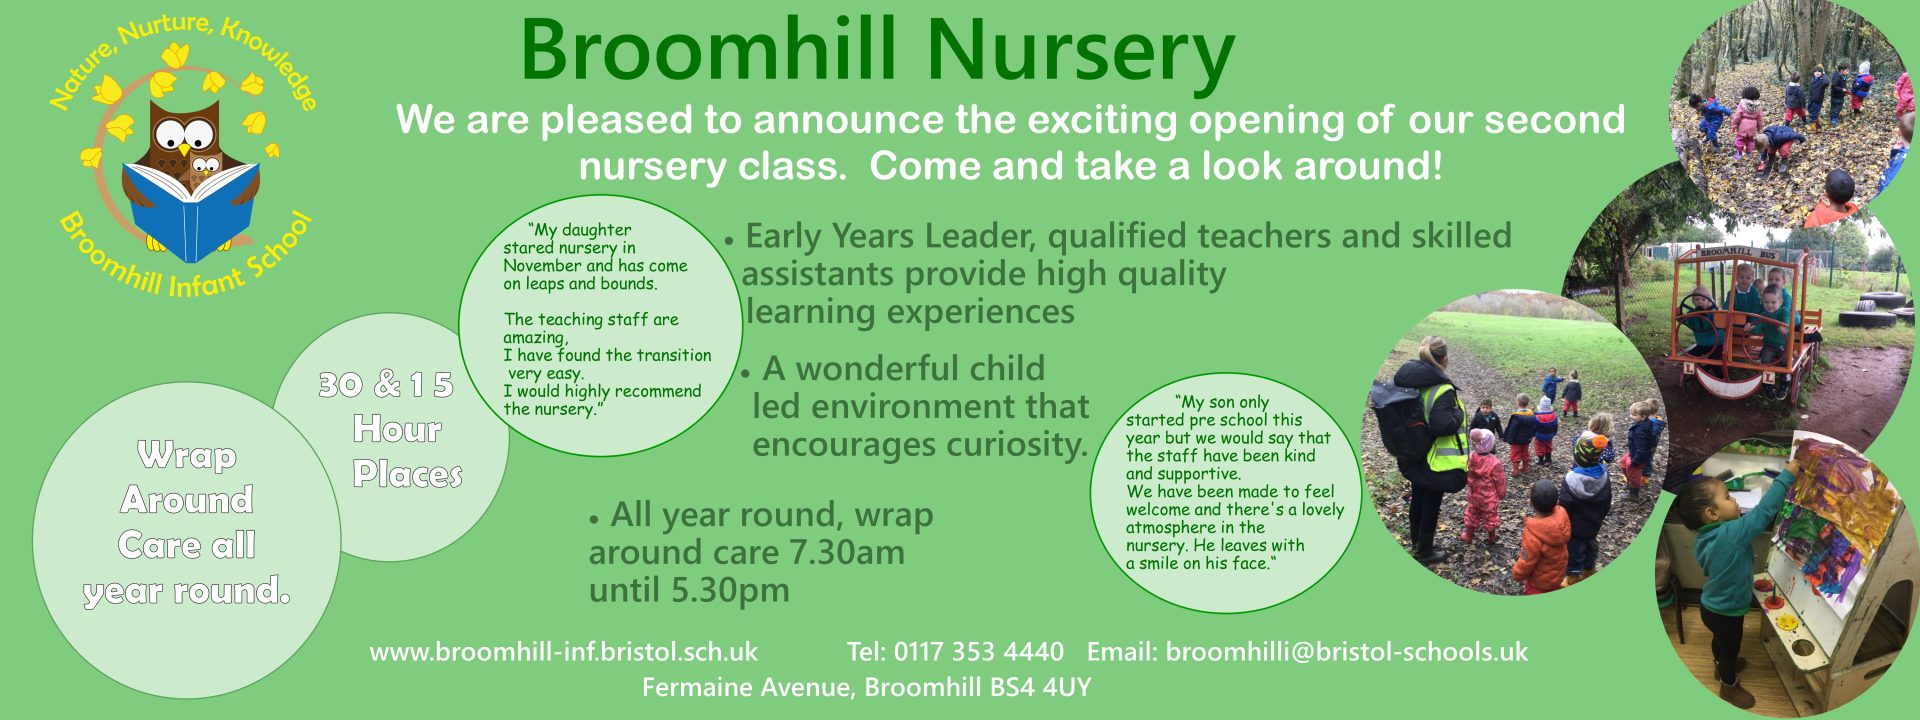 Broomhill Nursery